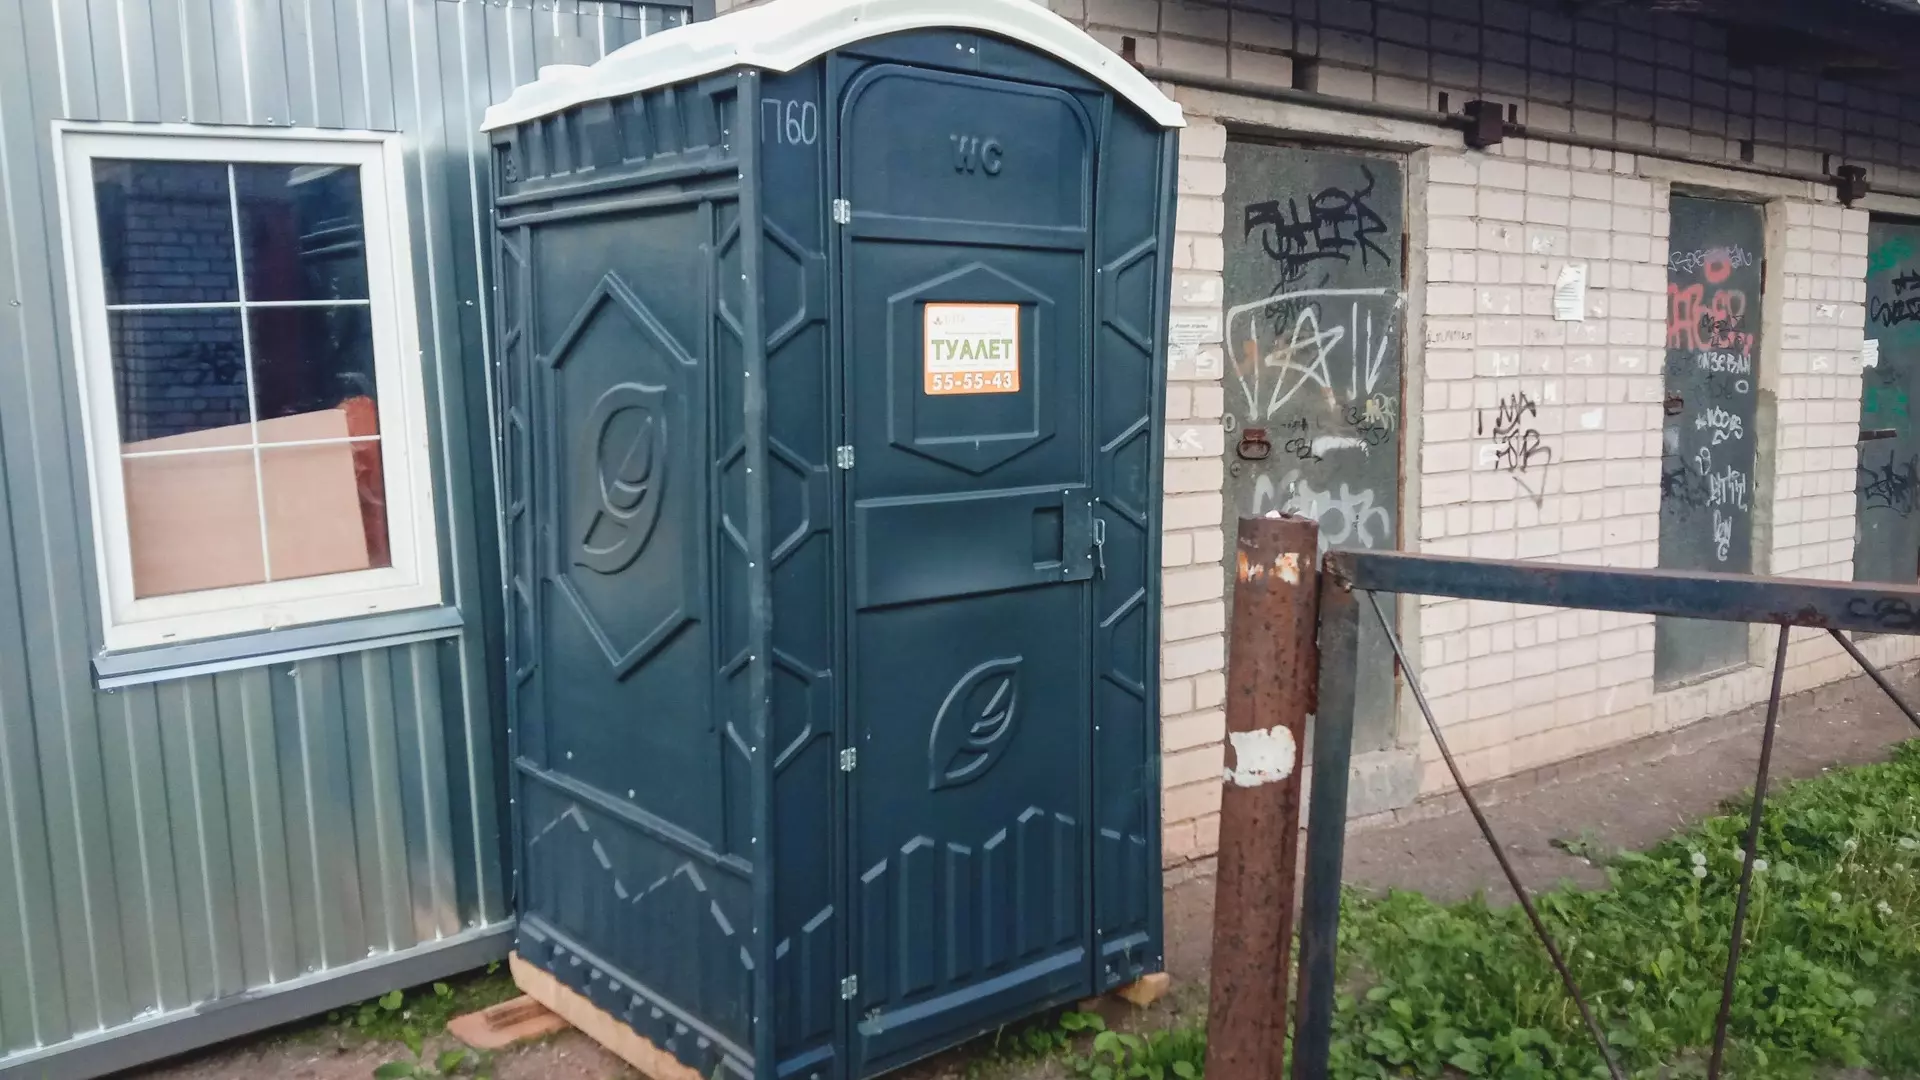 Власти Таганрога решили застроить город сотнями общественных туалетов